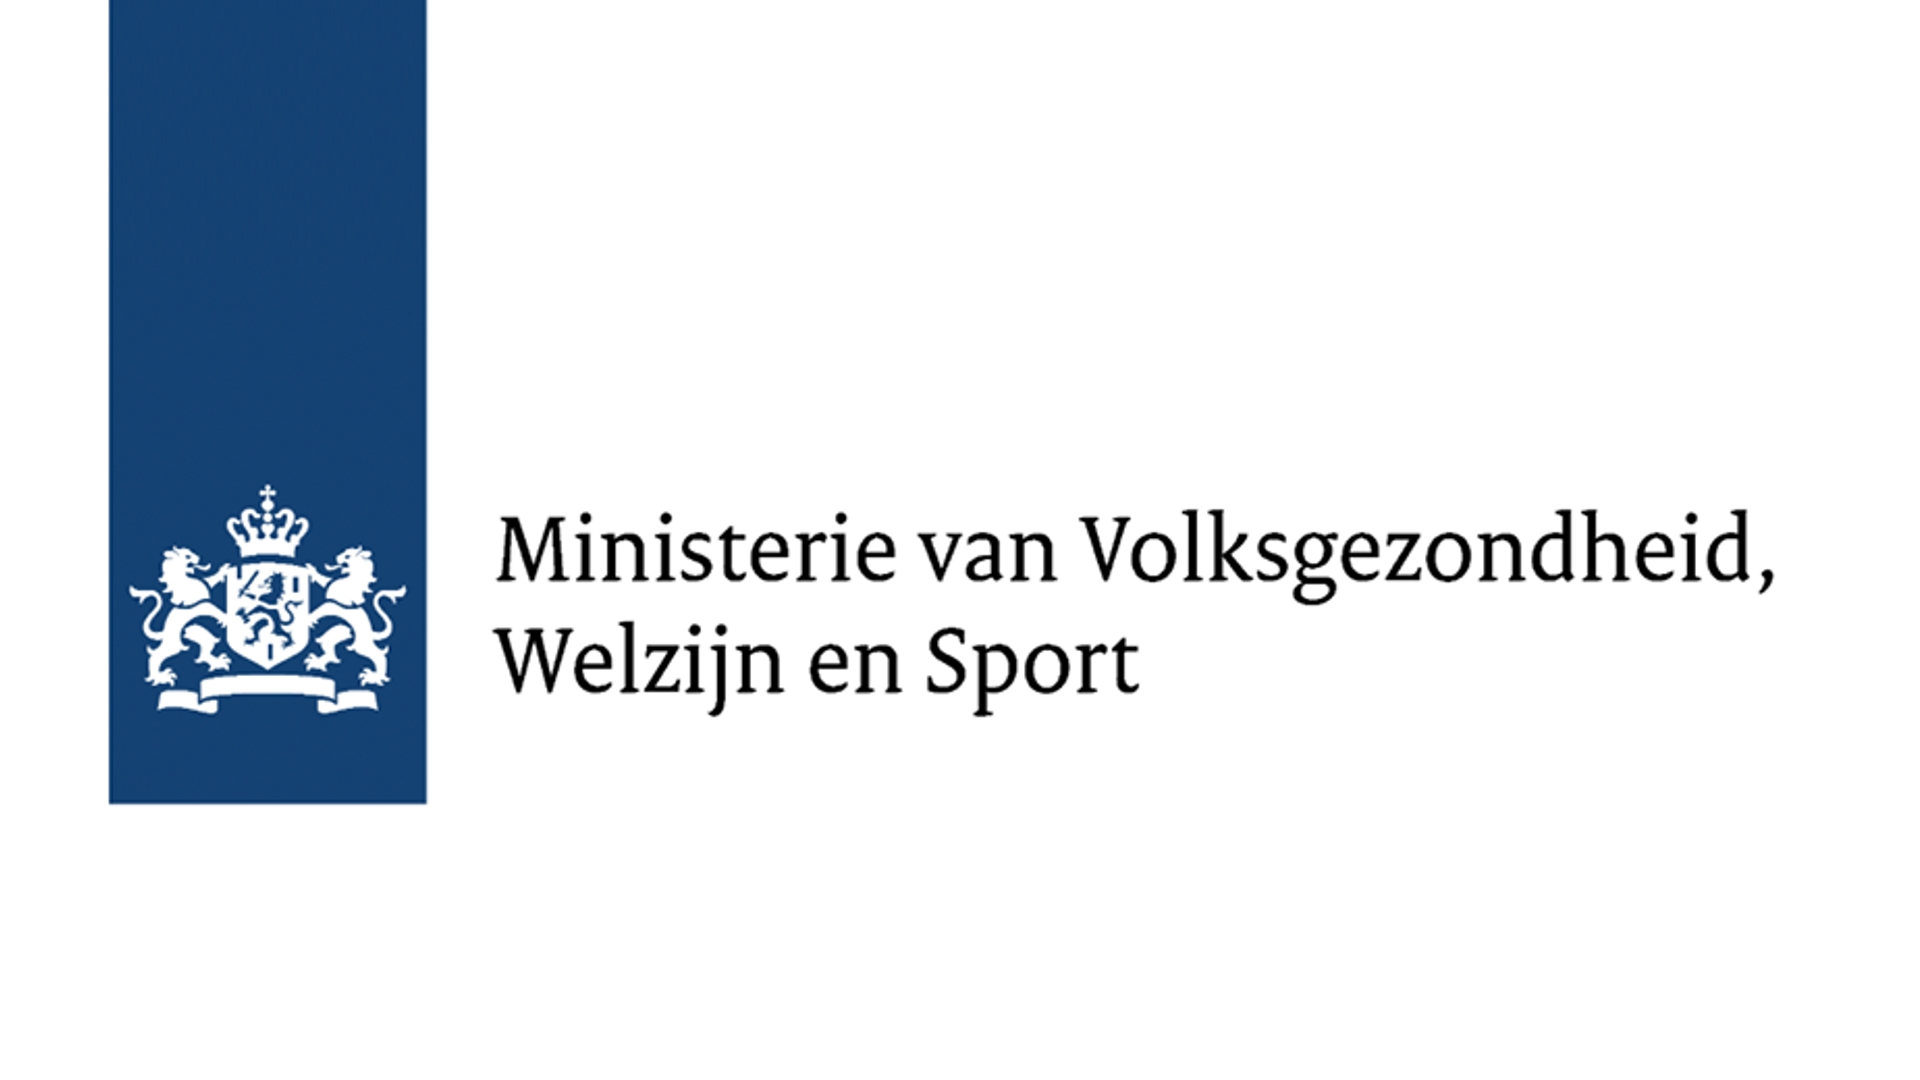 Ministerie van Volksgezondheid, Welzijn en Sport logo 930x520